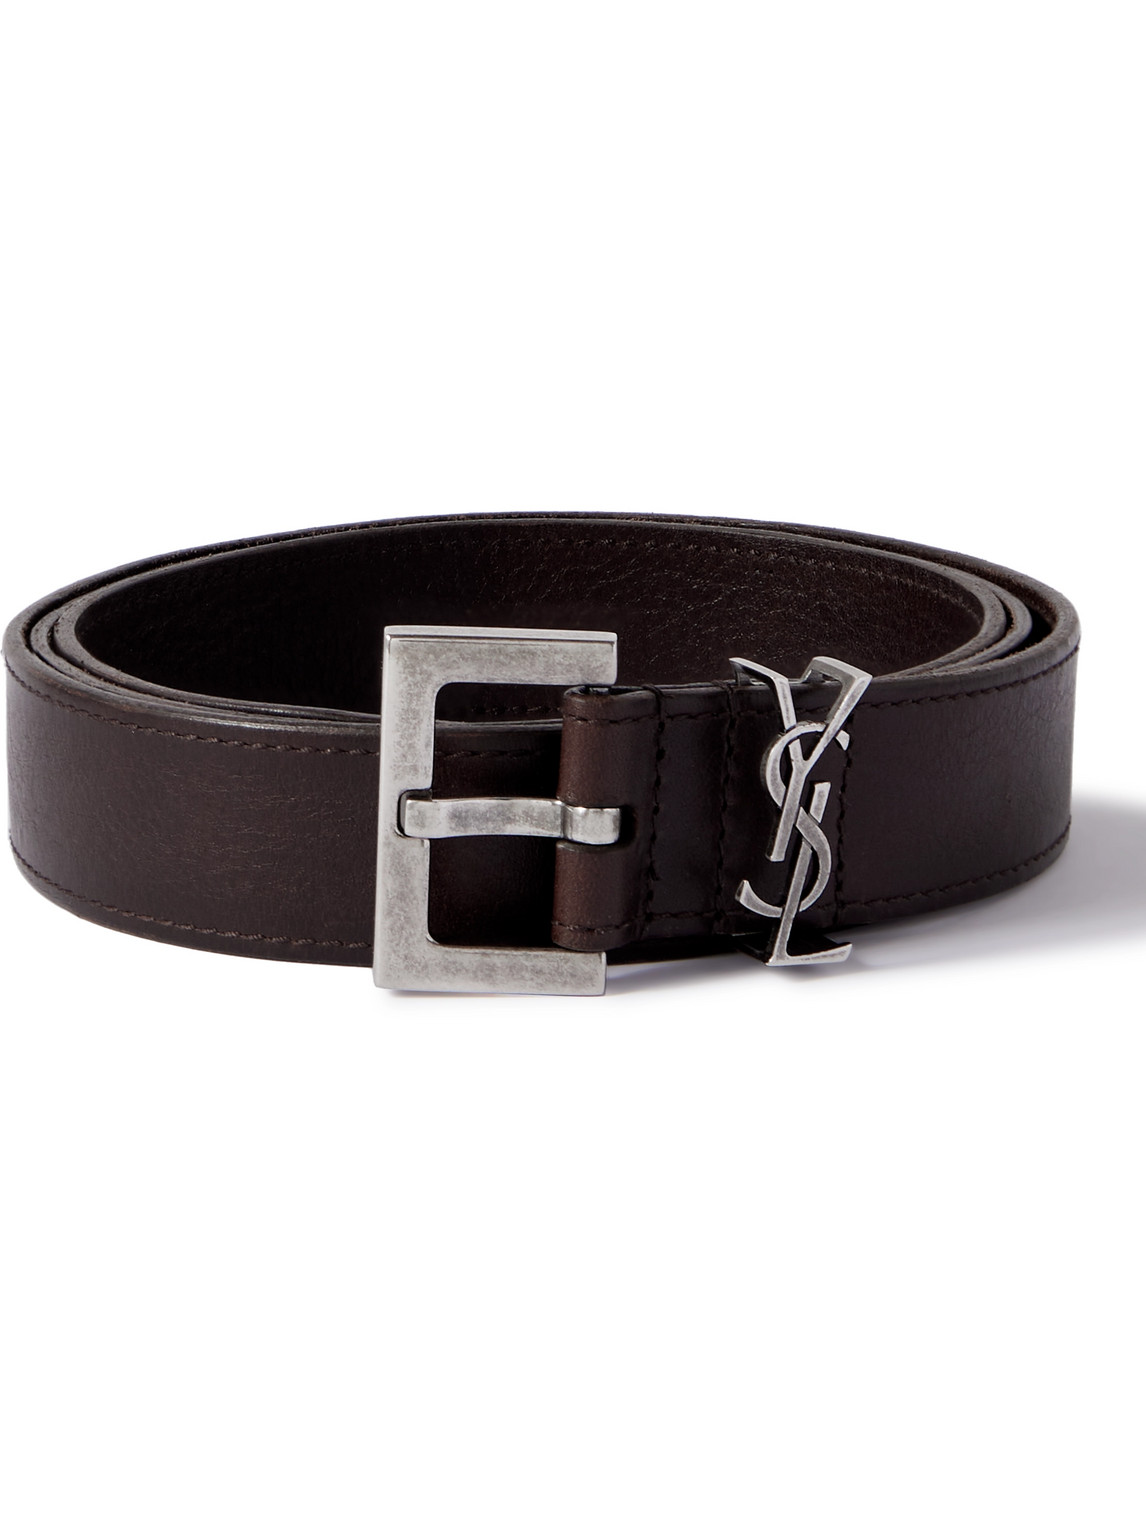 SAINT LAURENT - 3cm Leather Belt - Men - Brown - EU 90 von SAINT LAURENT